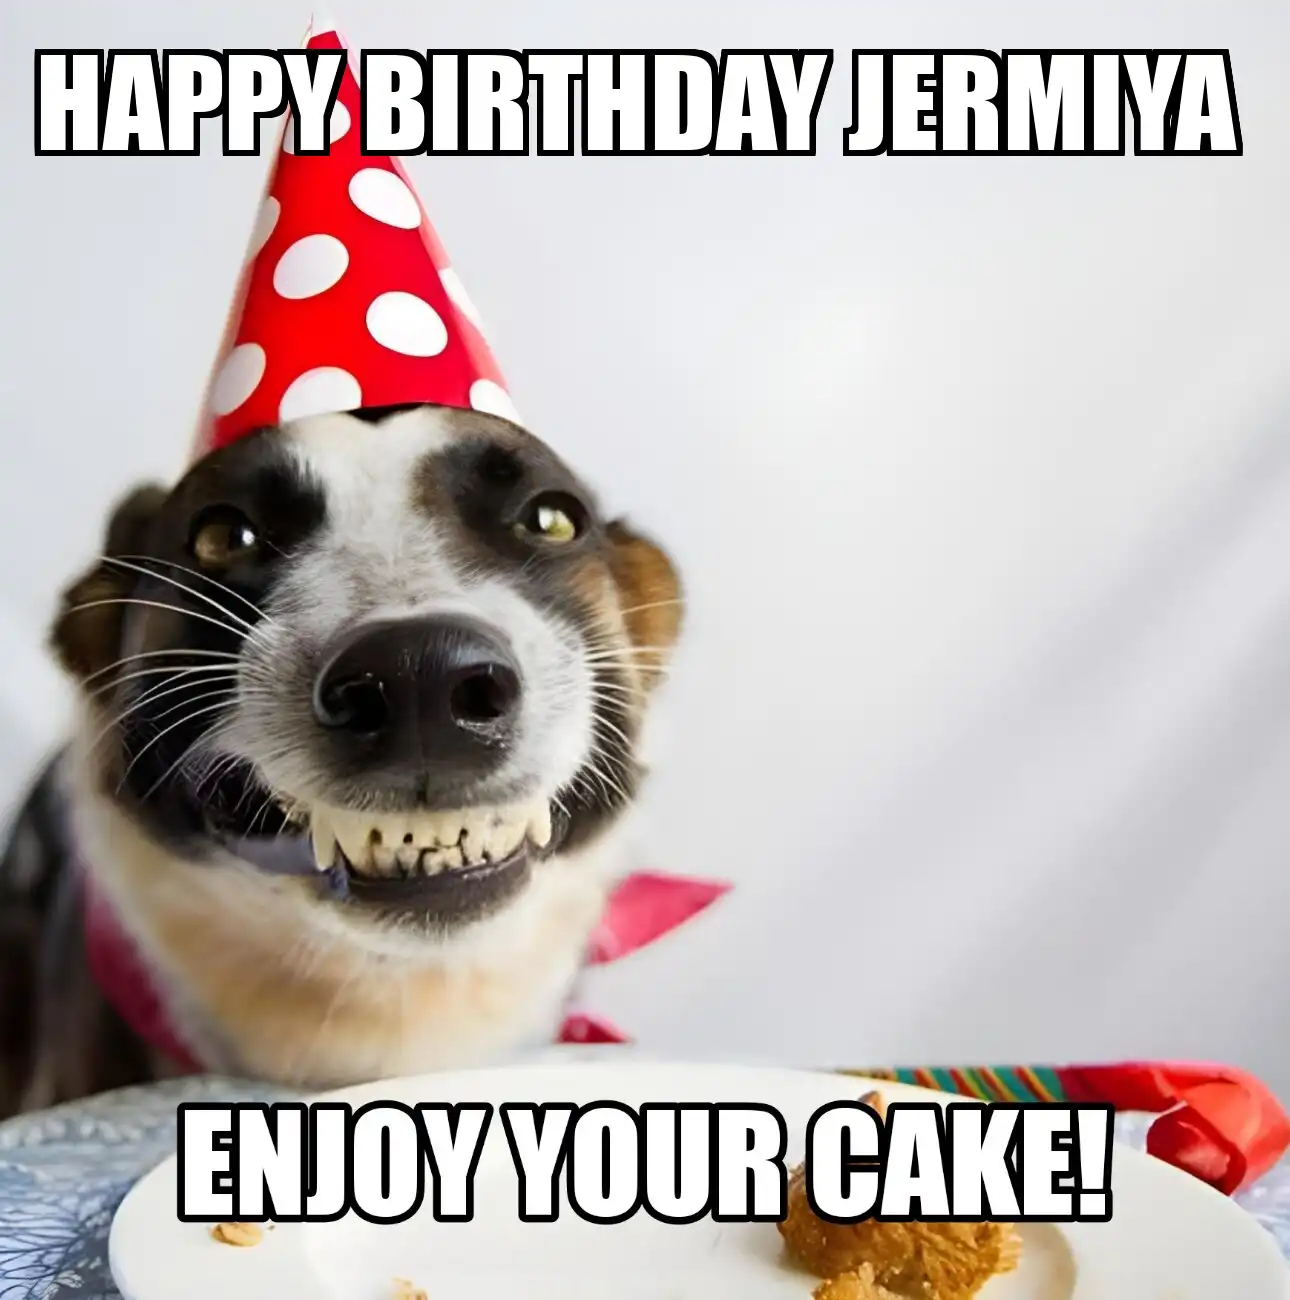 Happy Birthday Jermiya Enjoy Your Cake Dog Meme